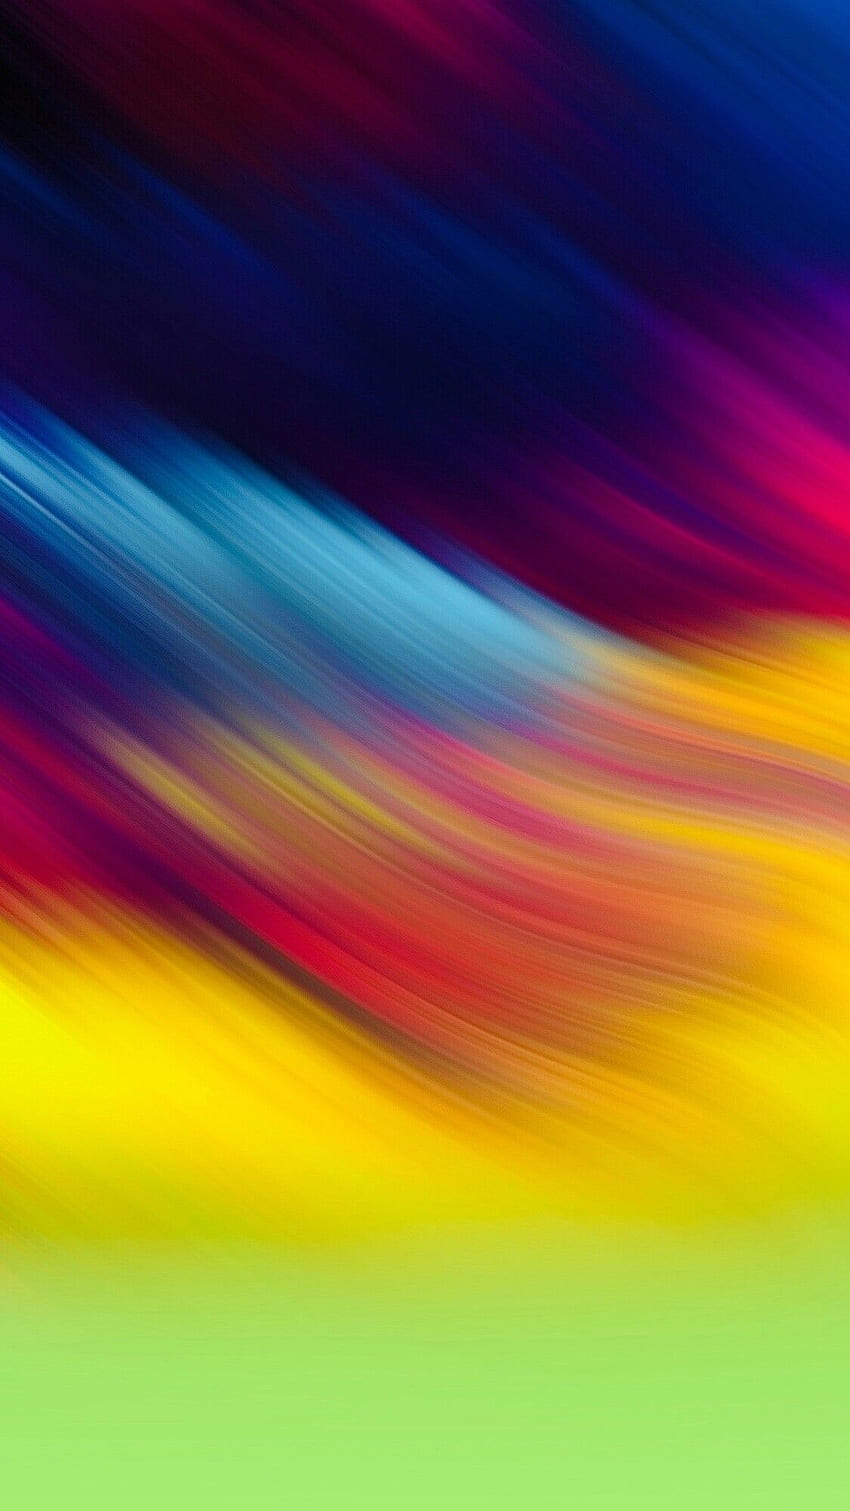 Joseph en Resumen °Amoled °Líquido °Gradiente. Colorido, Iphone abstracto, Arco iris, Multicolor fondo de pantalla del teléfono